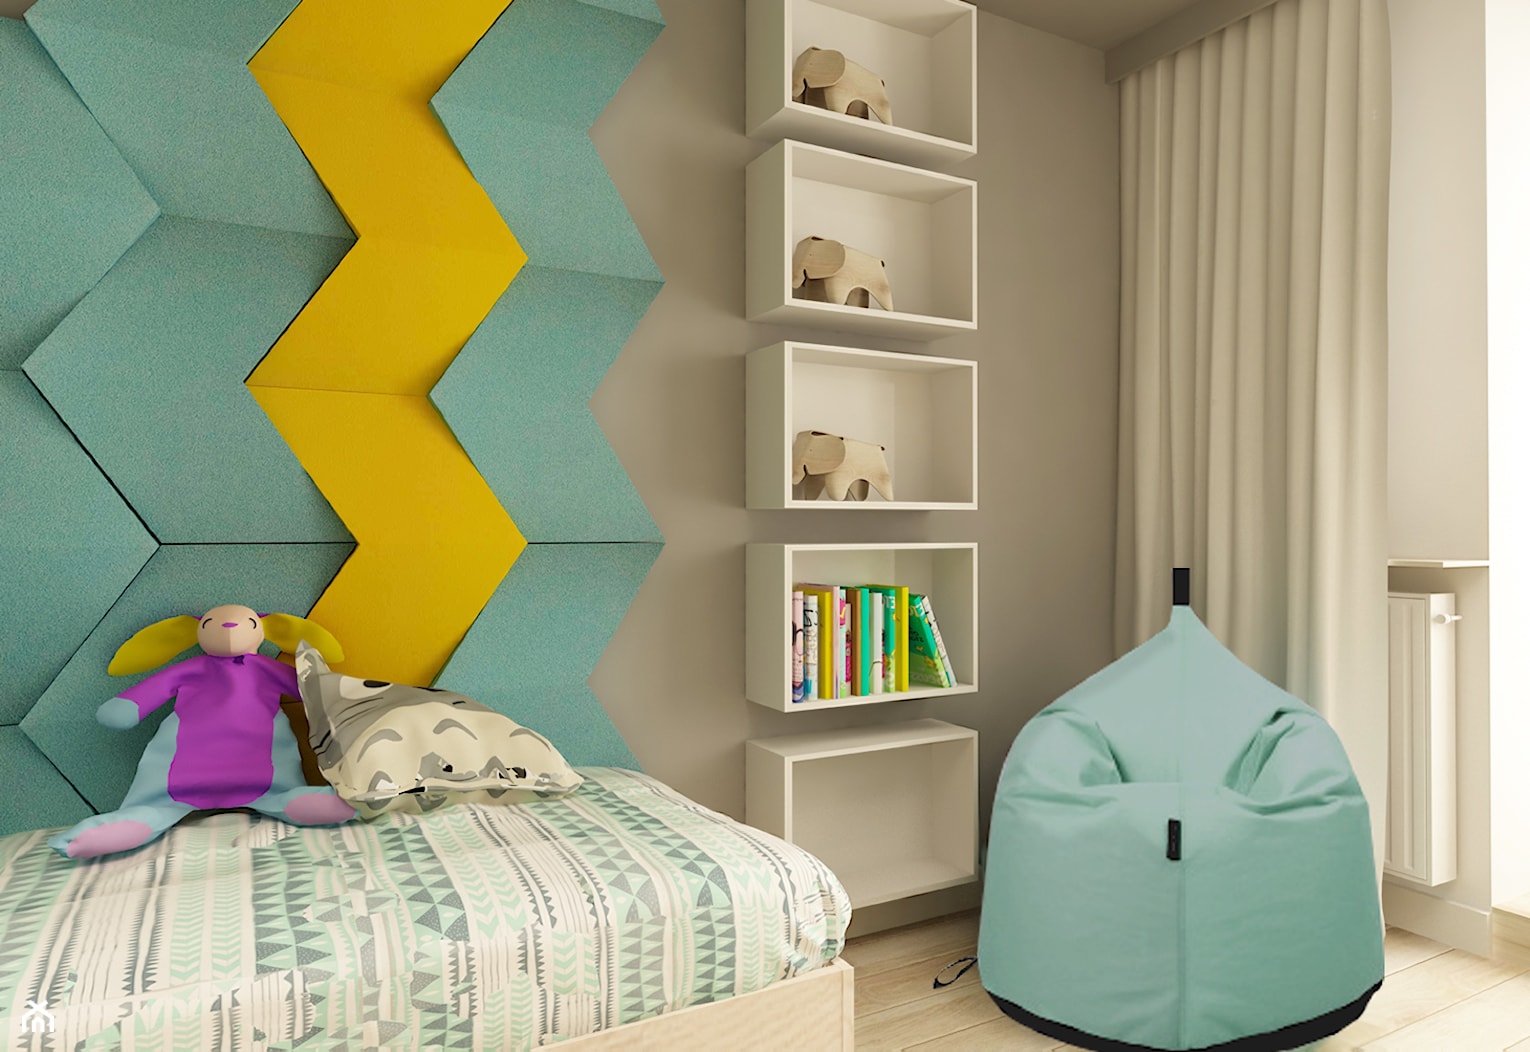 APARTAMENT NA GOCŁAWIU 120 m2 - Średni beżowy miętowy turkusowy żółty z panelami tapicerowanymi pokó ... - zdjęcie od design me too - Homebook